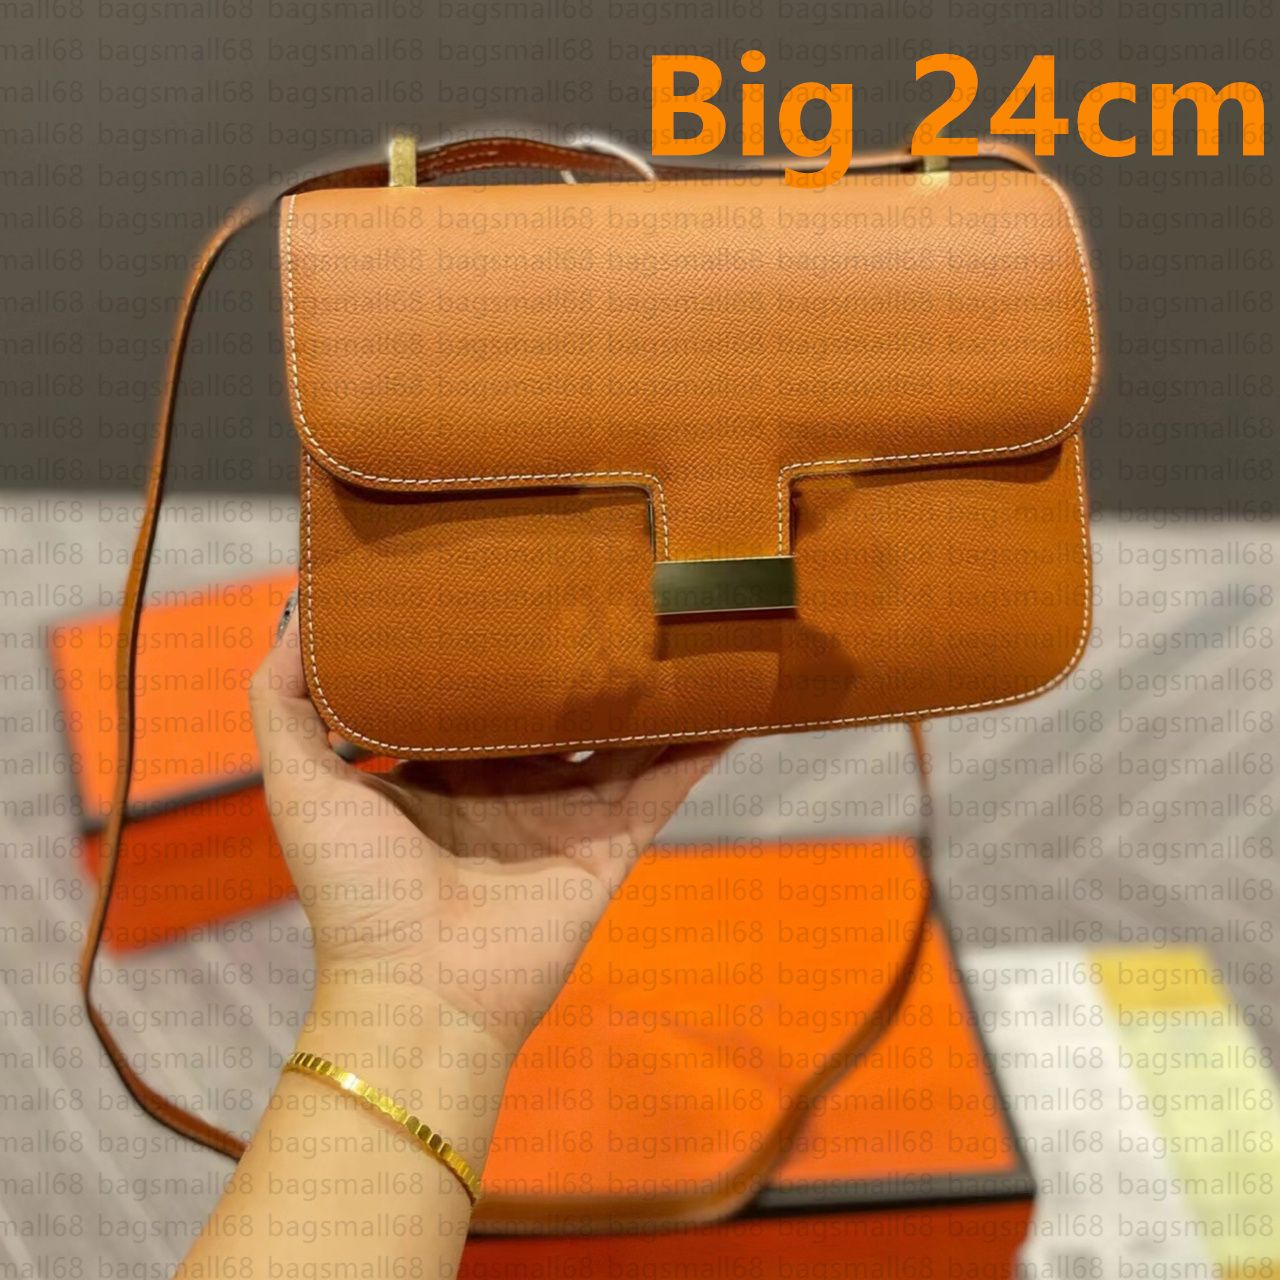 Big /24 cm Brown